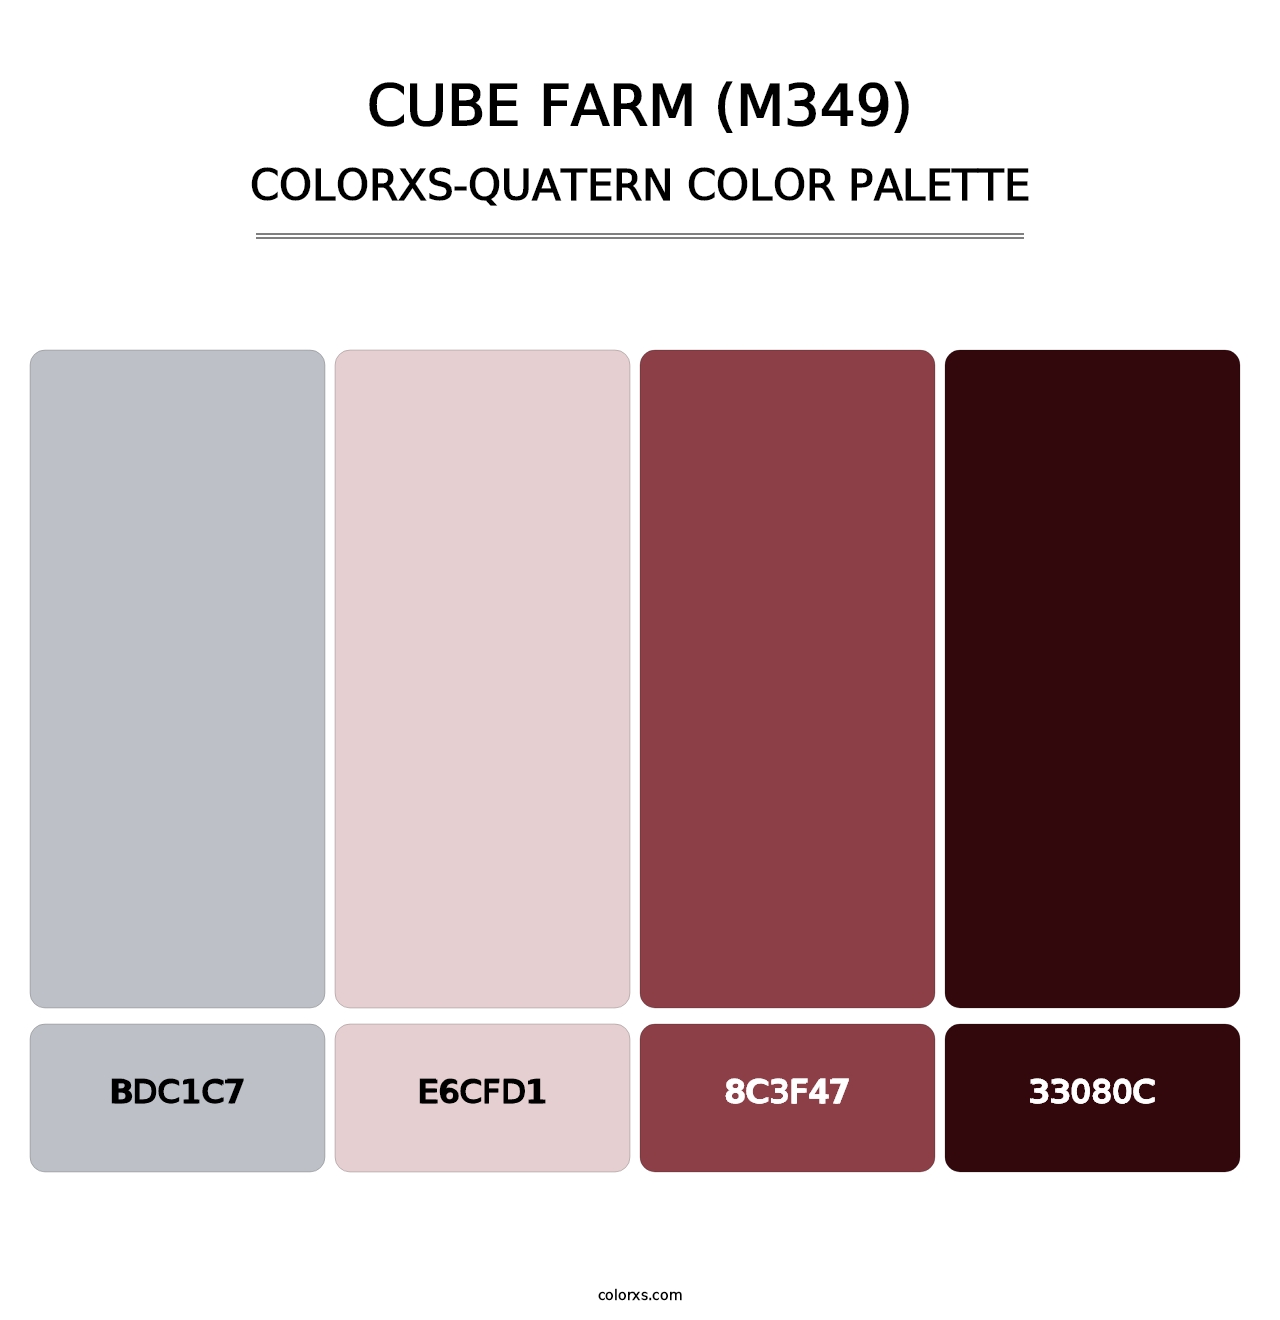 Cube Farm (M349) - Colorxs Quatern Palette